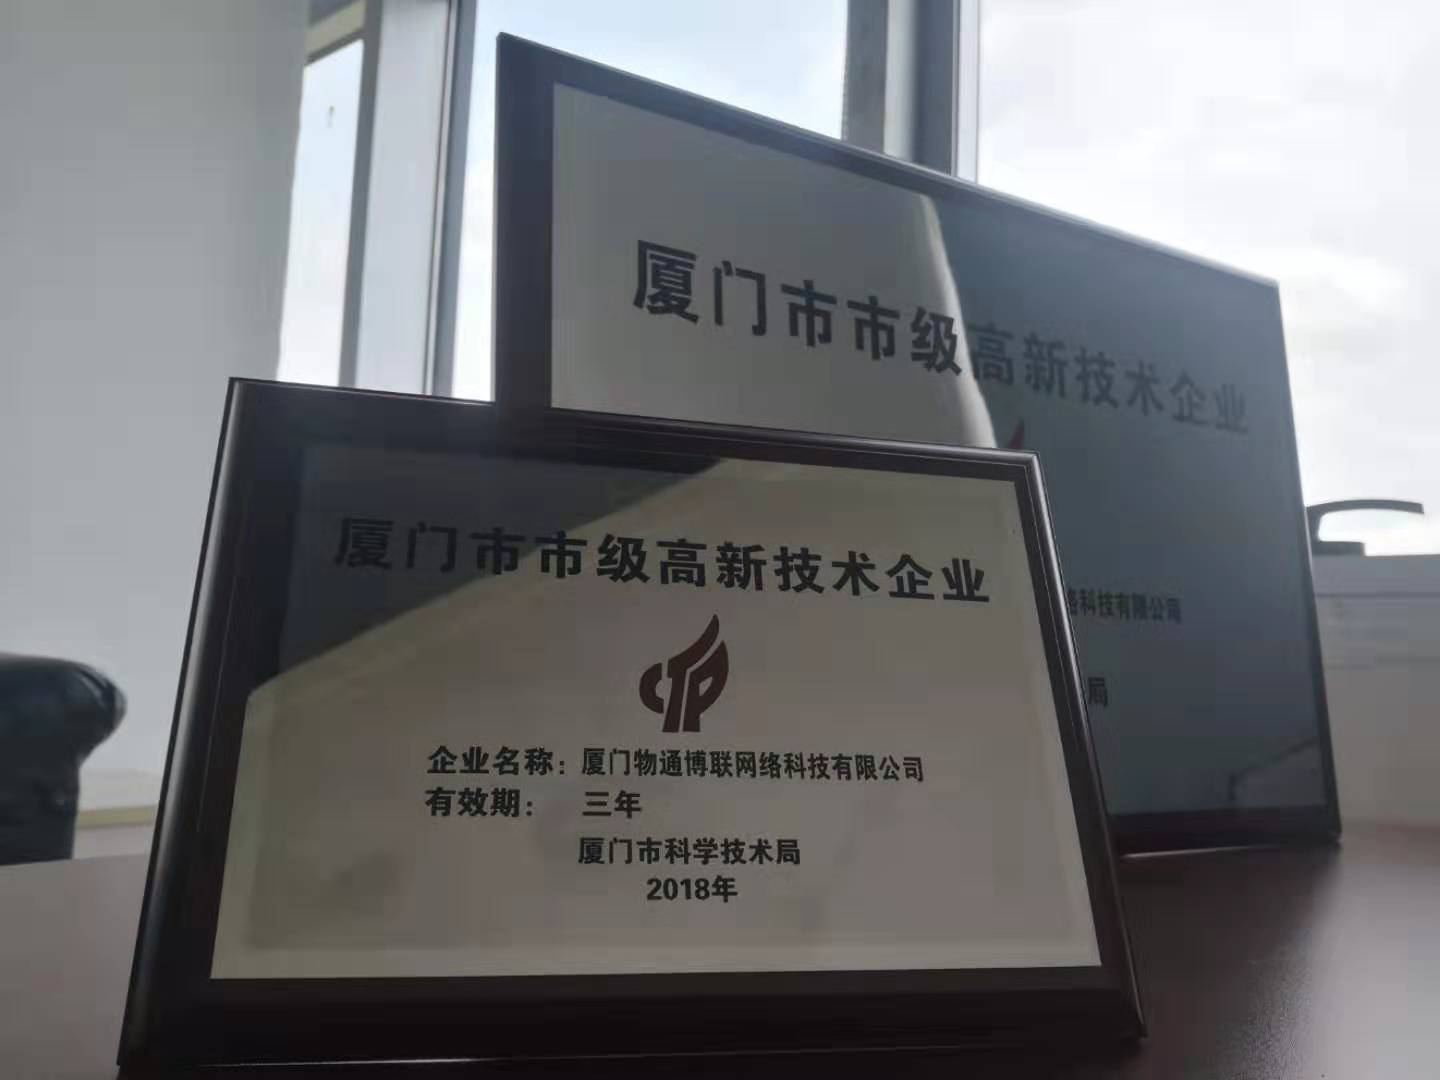 物通博联荣获“厦门市市级高新技术企业” 殊荣！